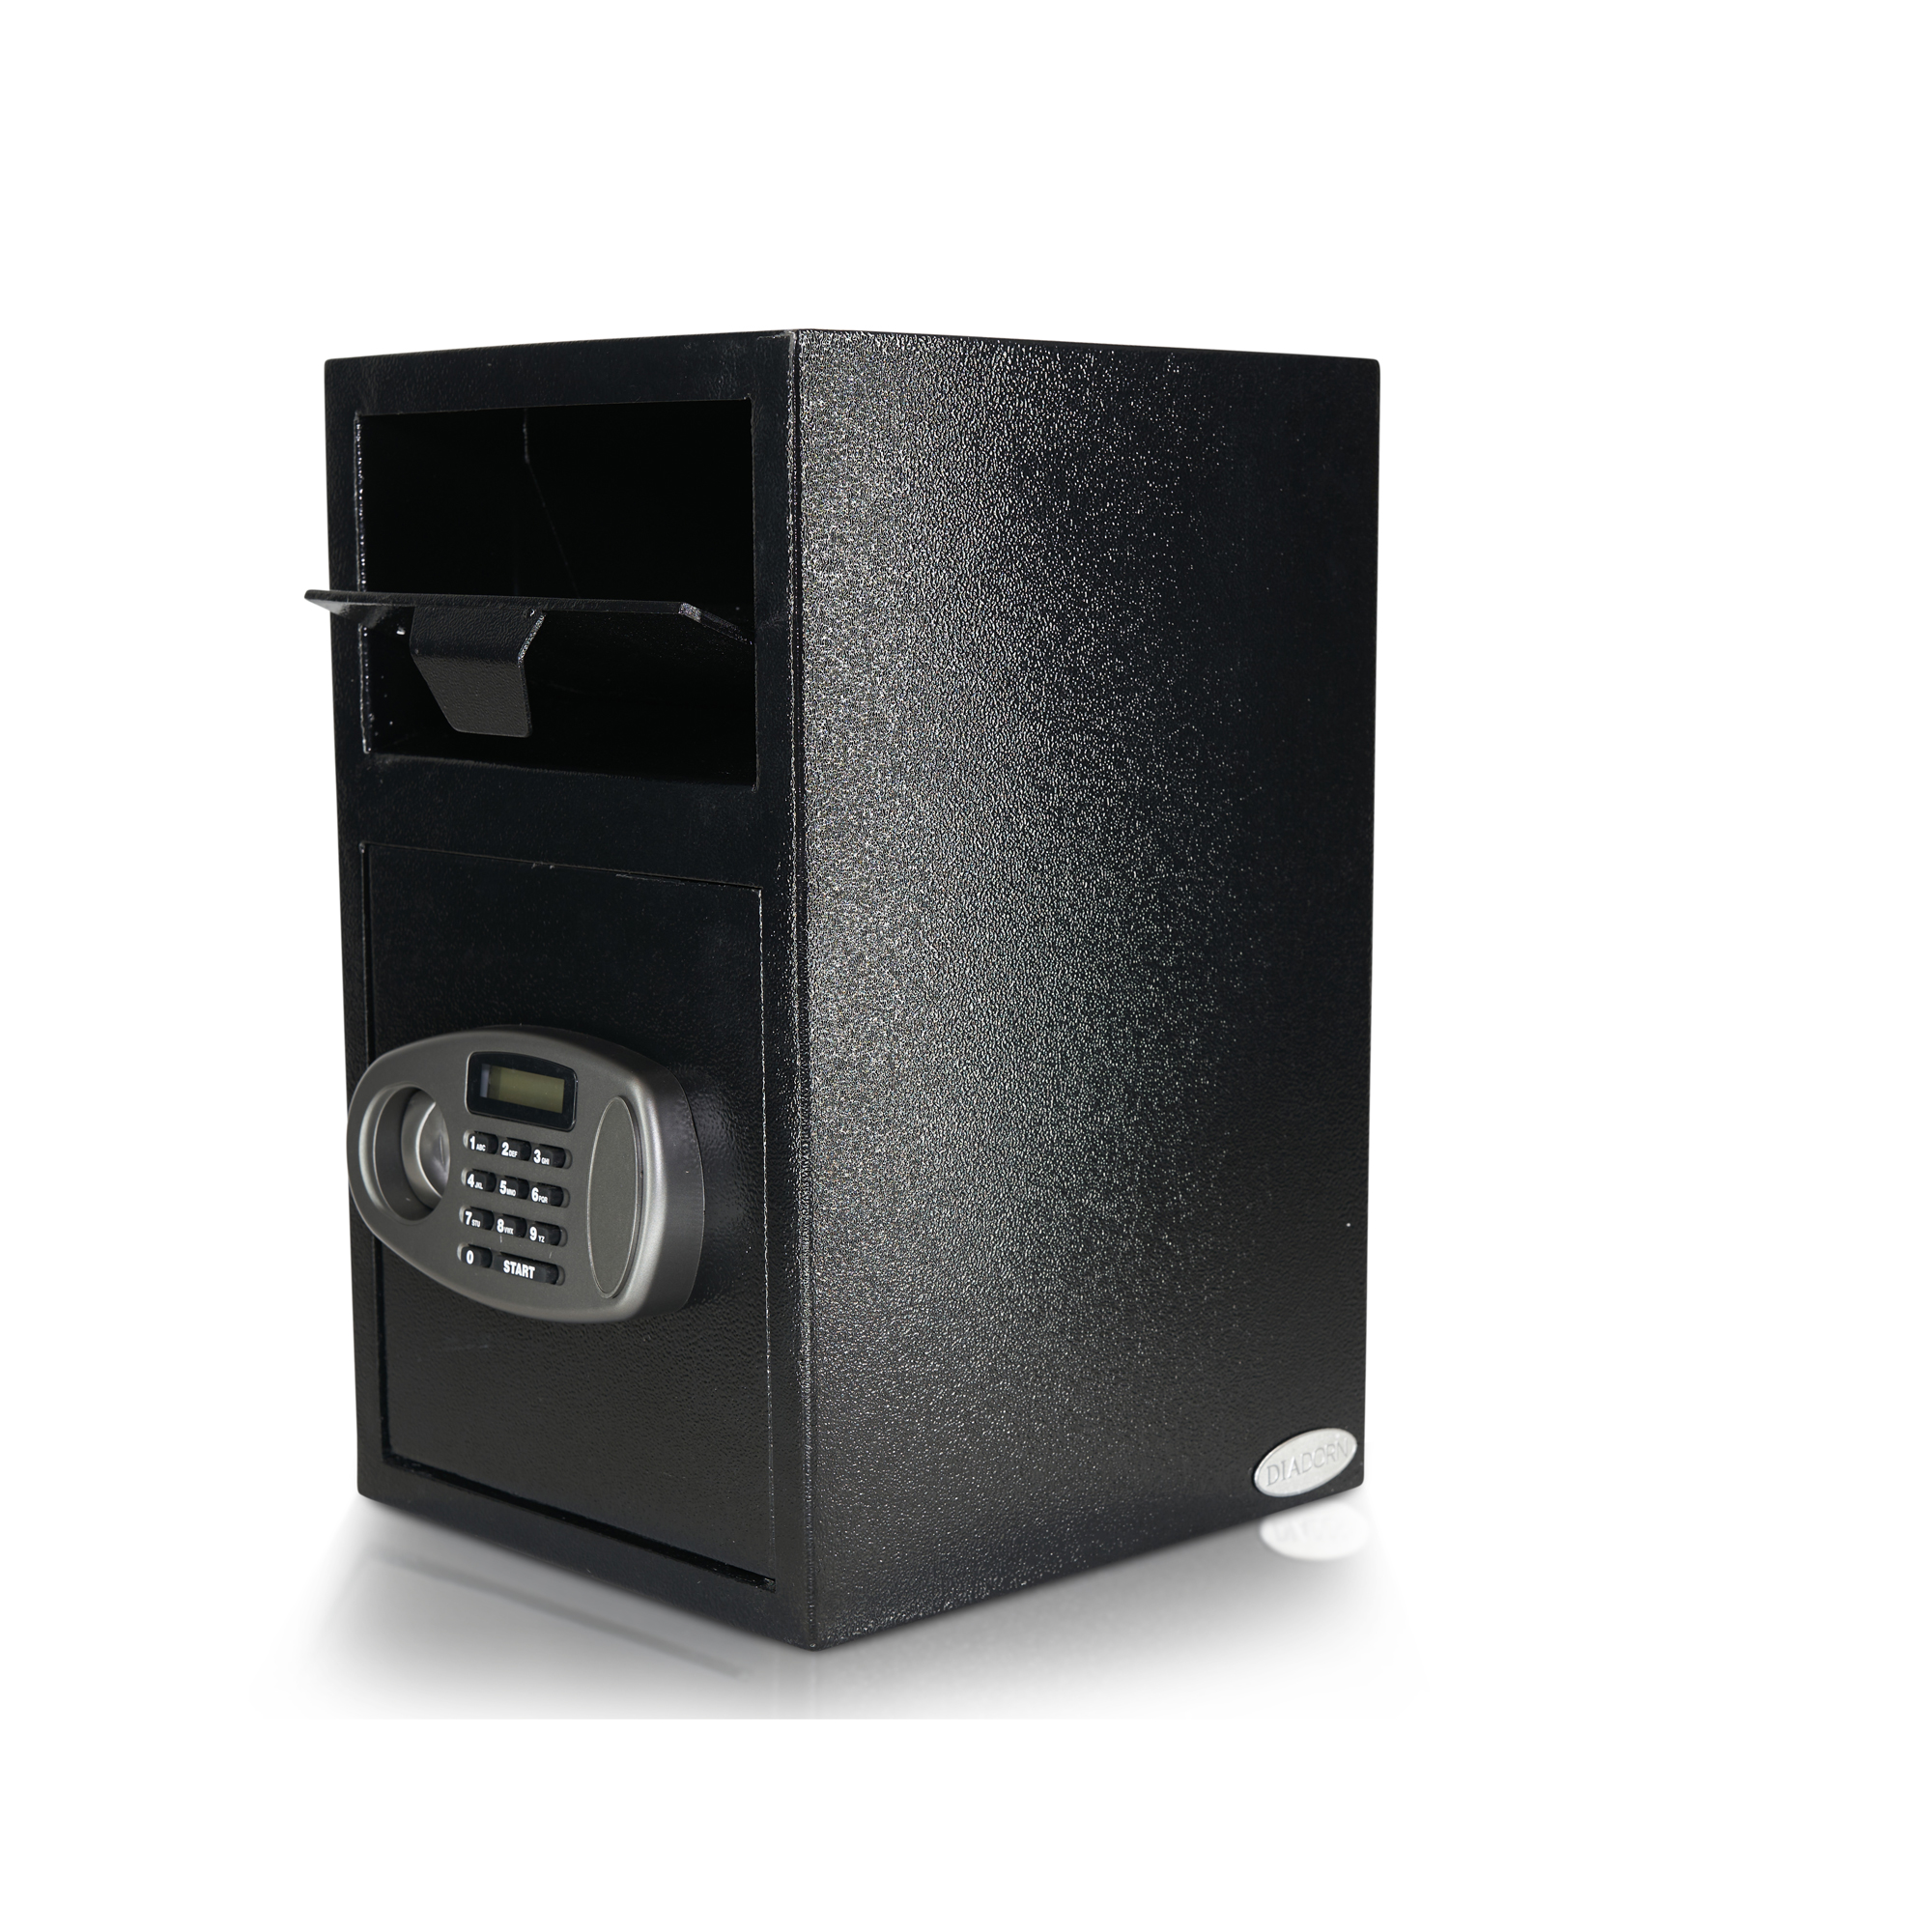 Cassetta di sicurezza per depositi con sportello di deposito | Clienti commerciali | Gastronomia | Serratura elettronica